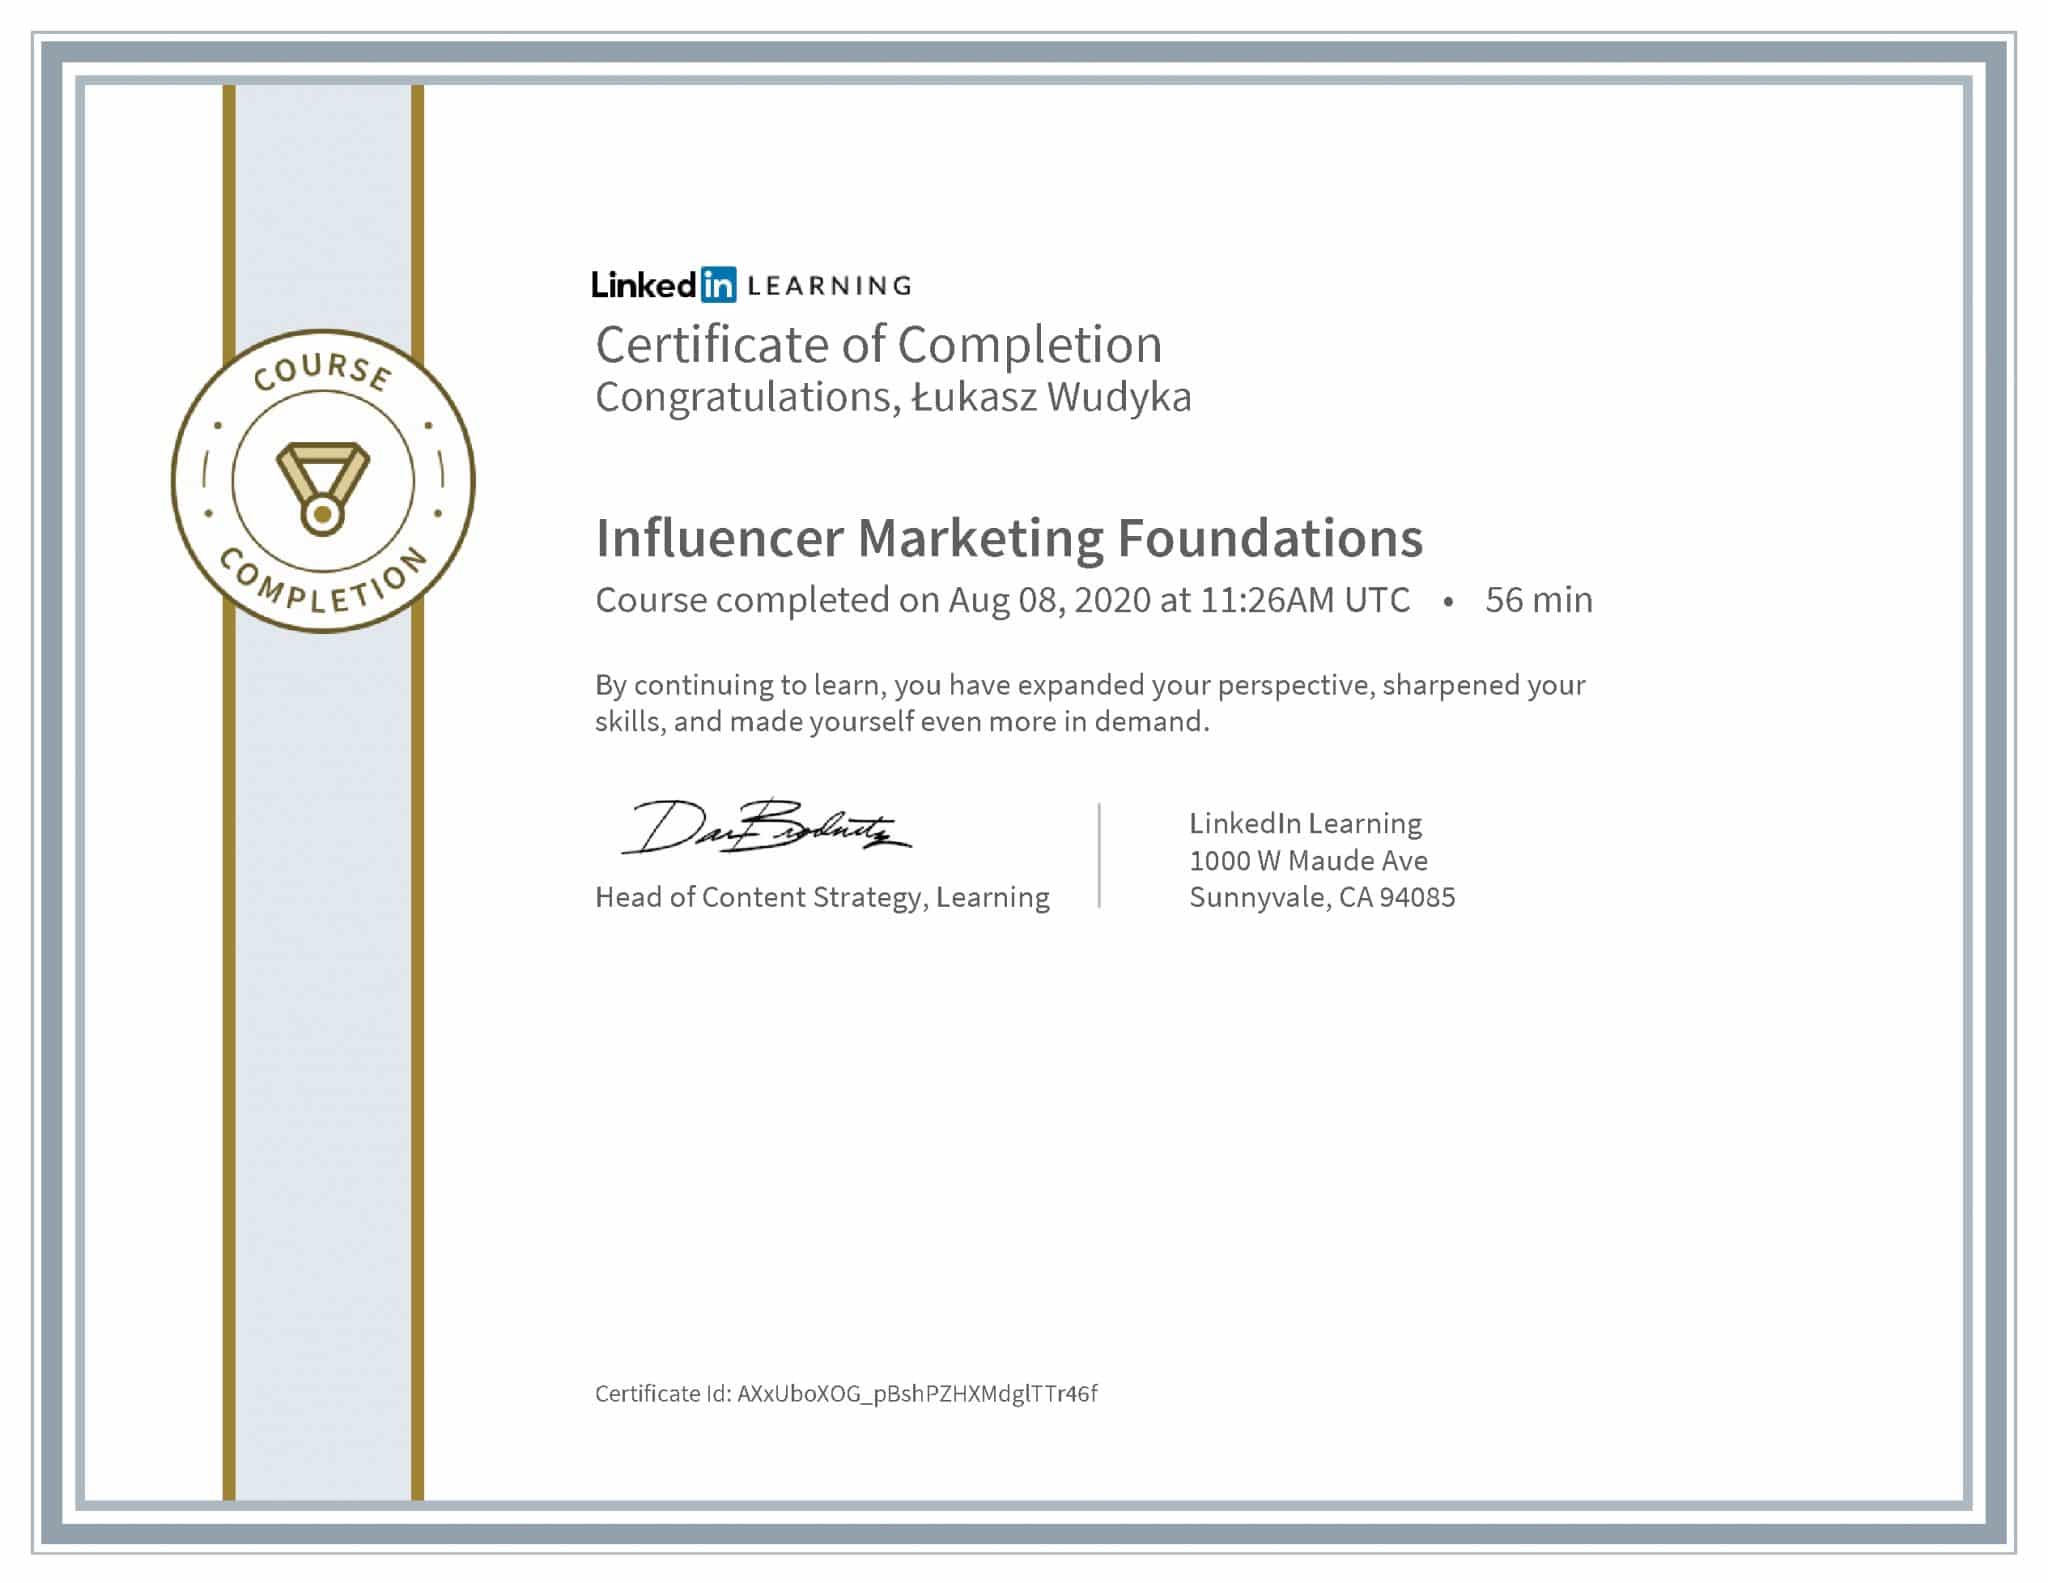 Łukasz Wudyka certyfikat LinkedIn Influencer Marketing Foundations